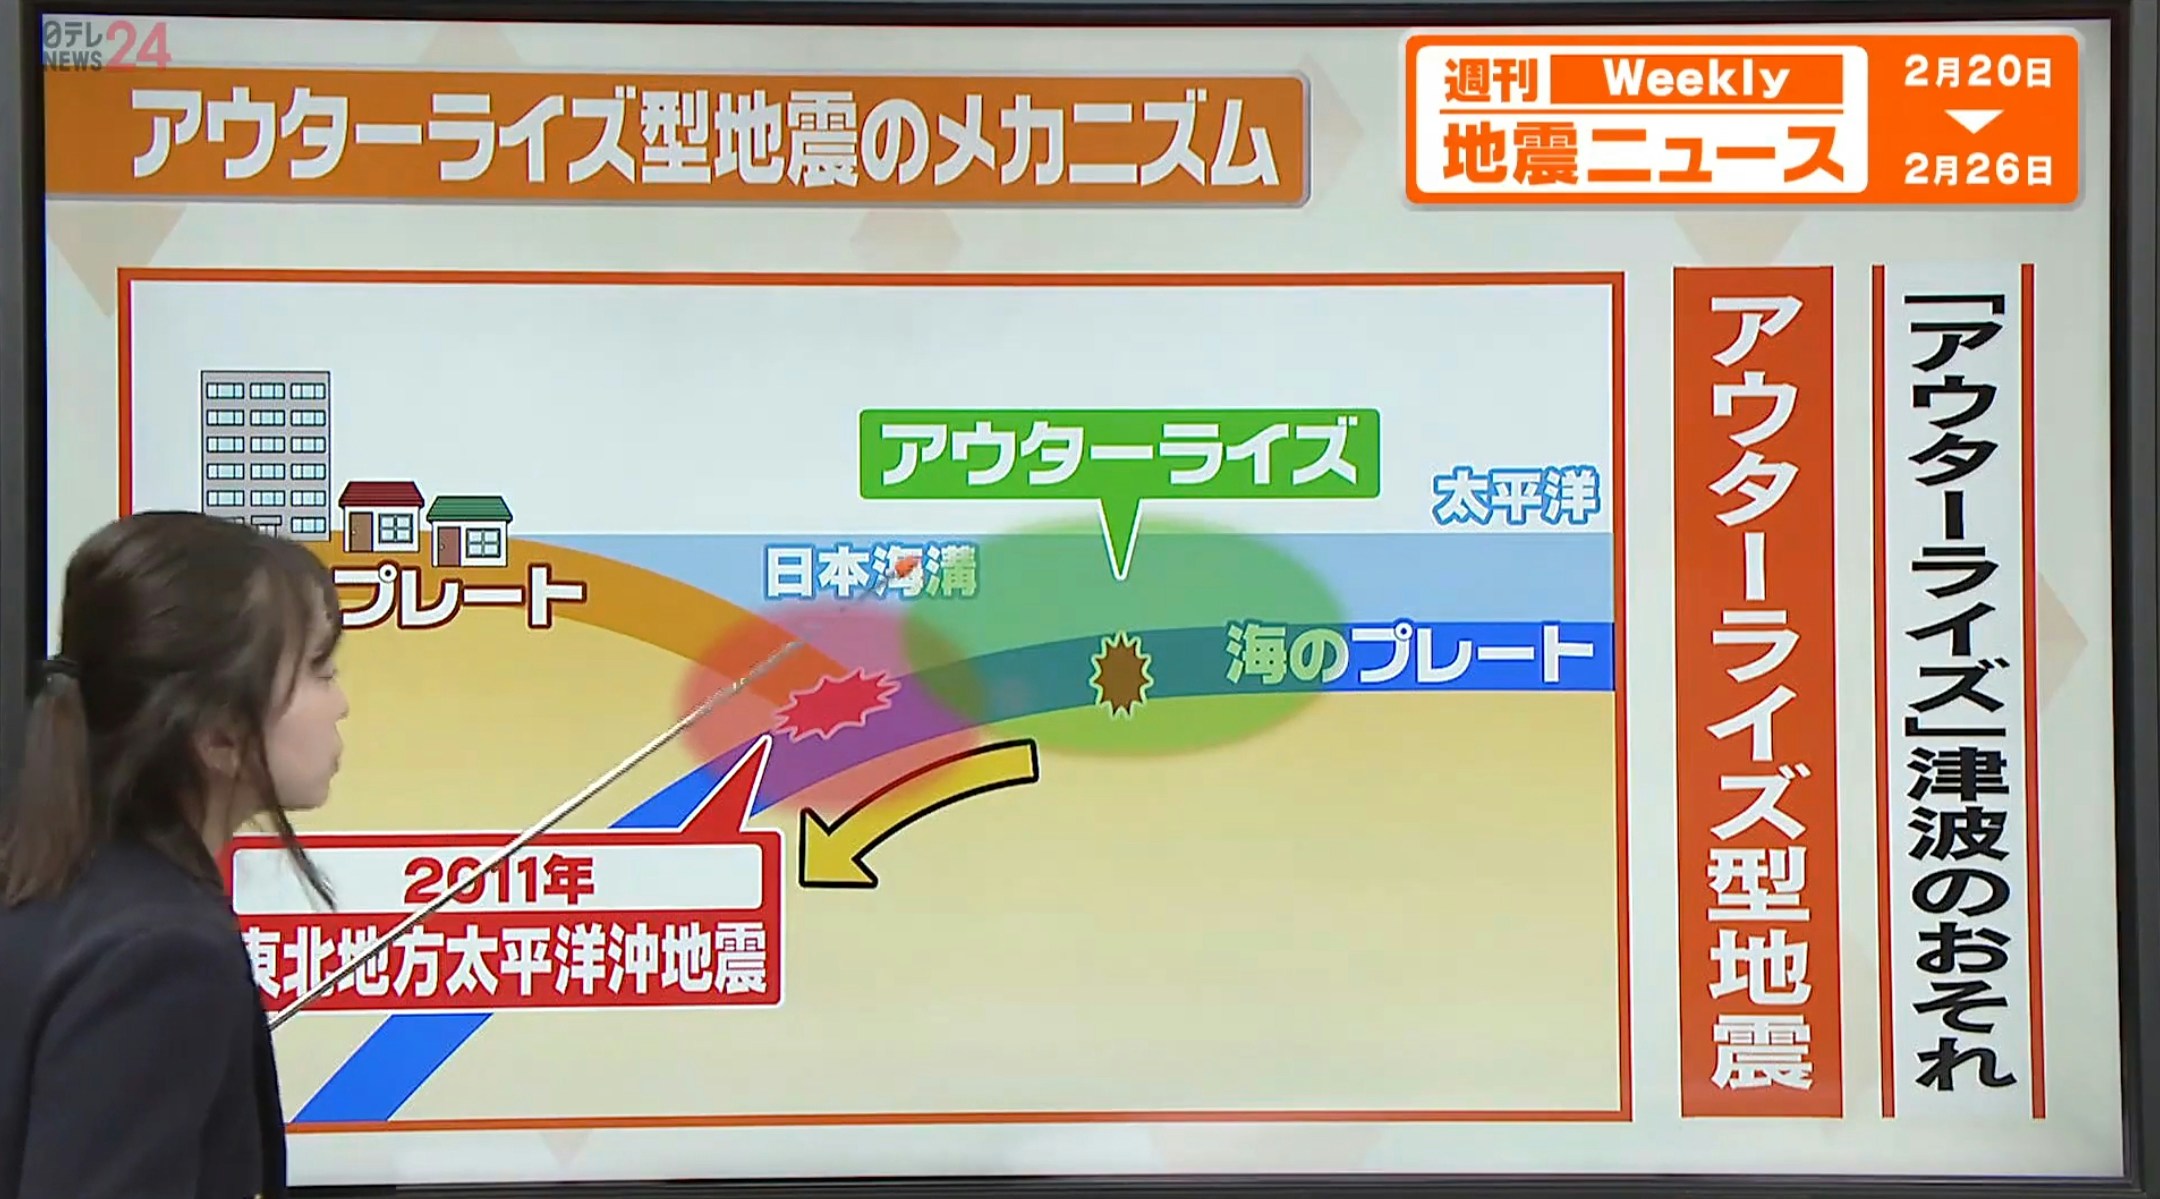 随著311大地震届满13周年将近，日本媒体再次报导，外隆起附近的地震活动增加，未来有发生大地震危险。（YouTube@日テレNEWS）